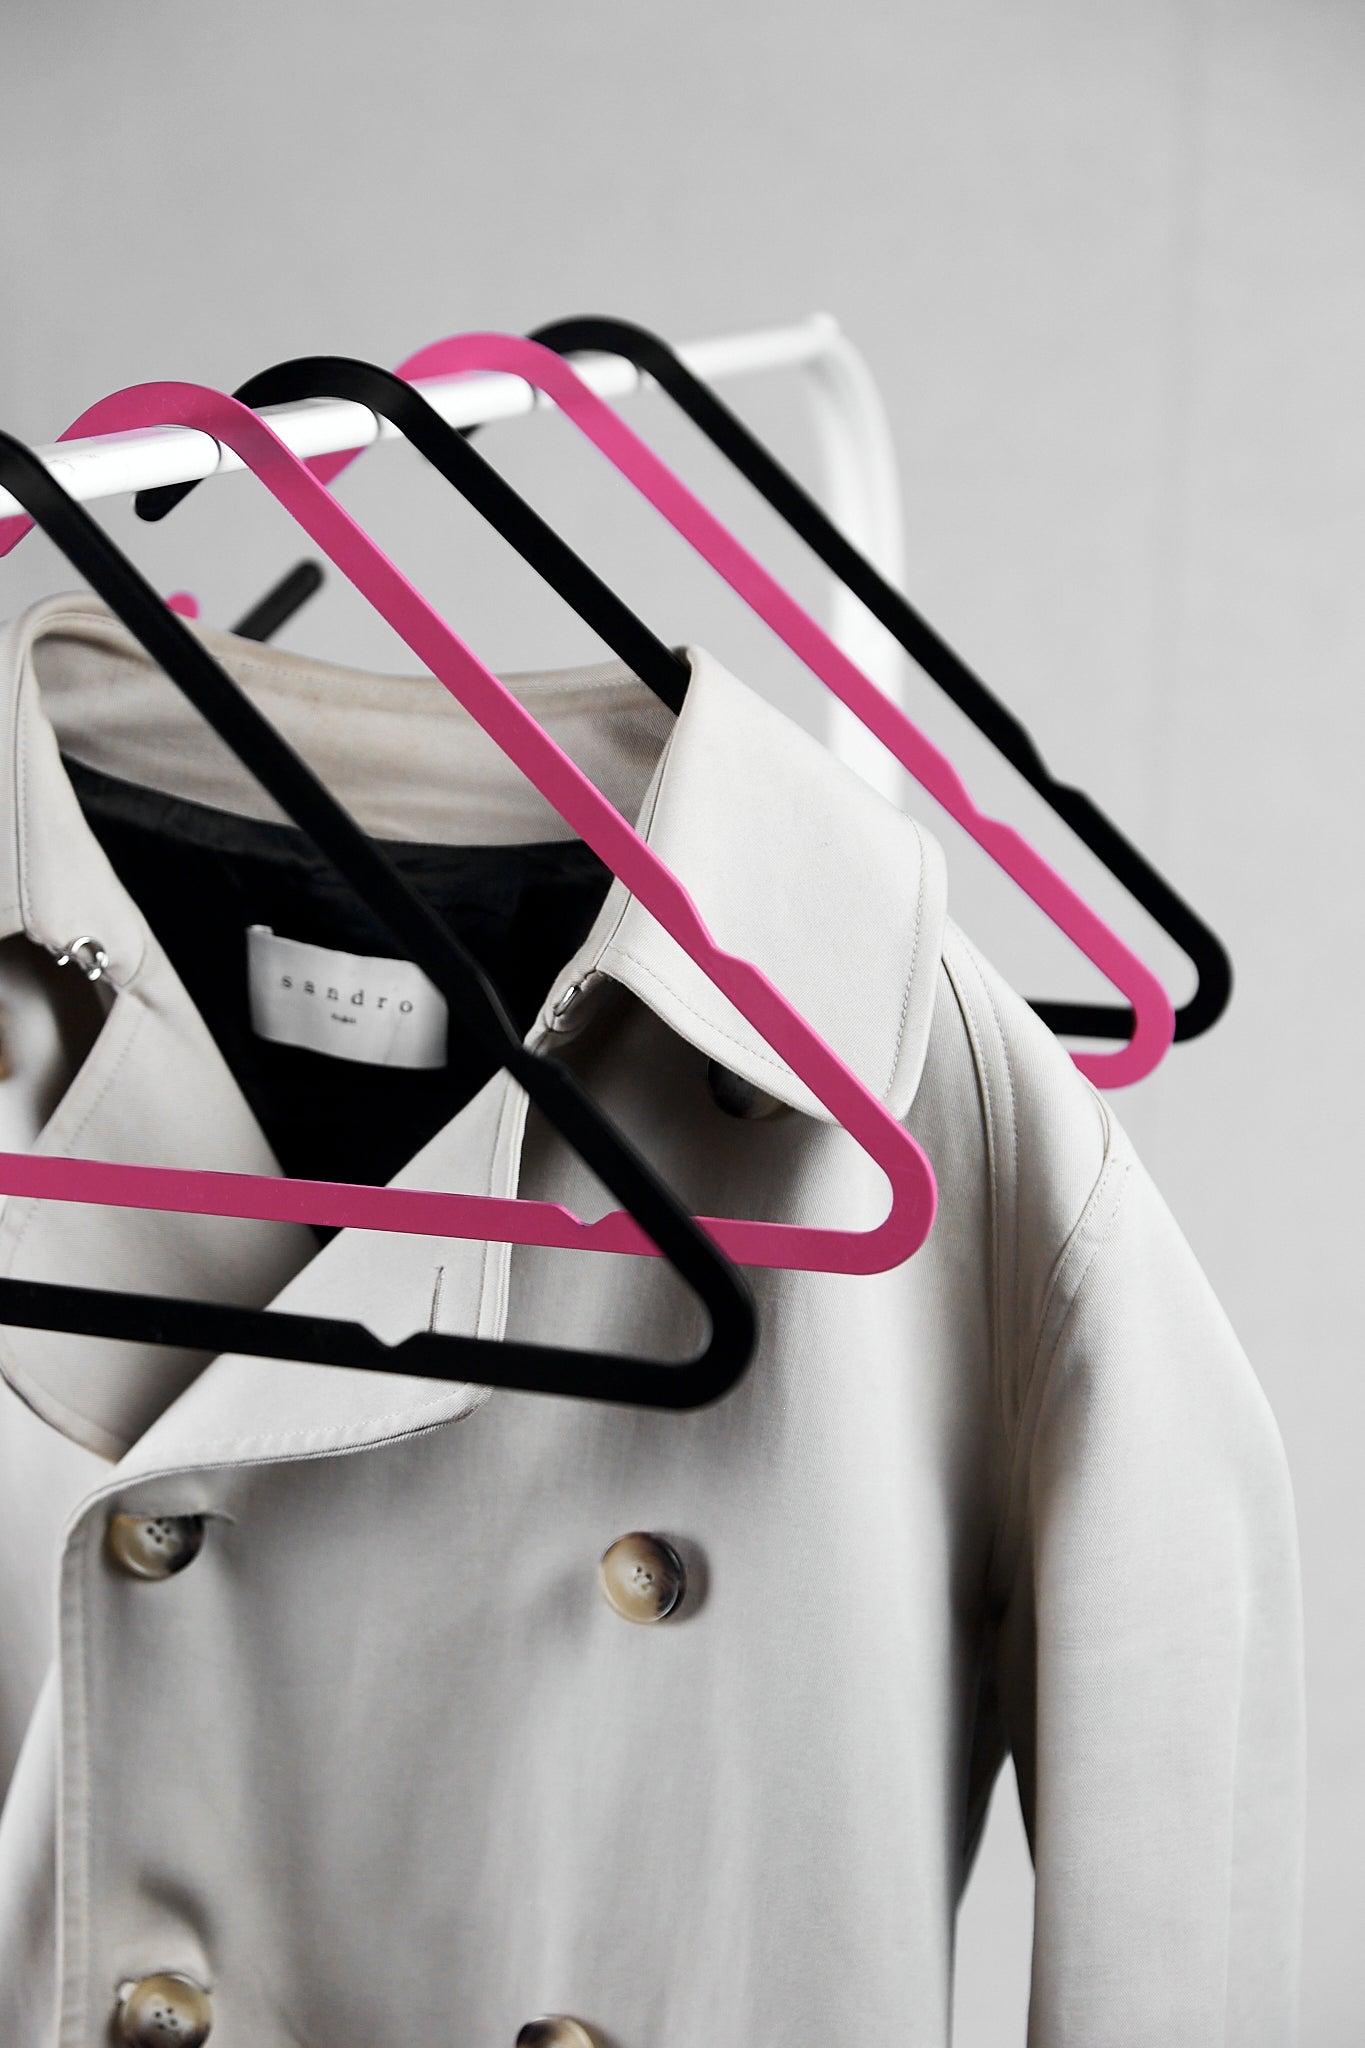 Design coat hangers made from steel